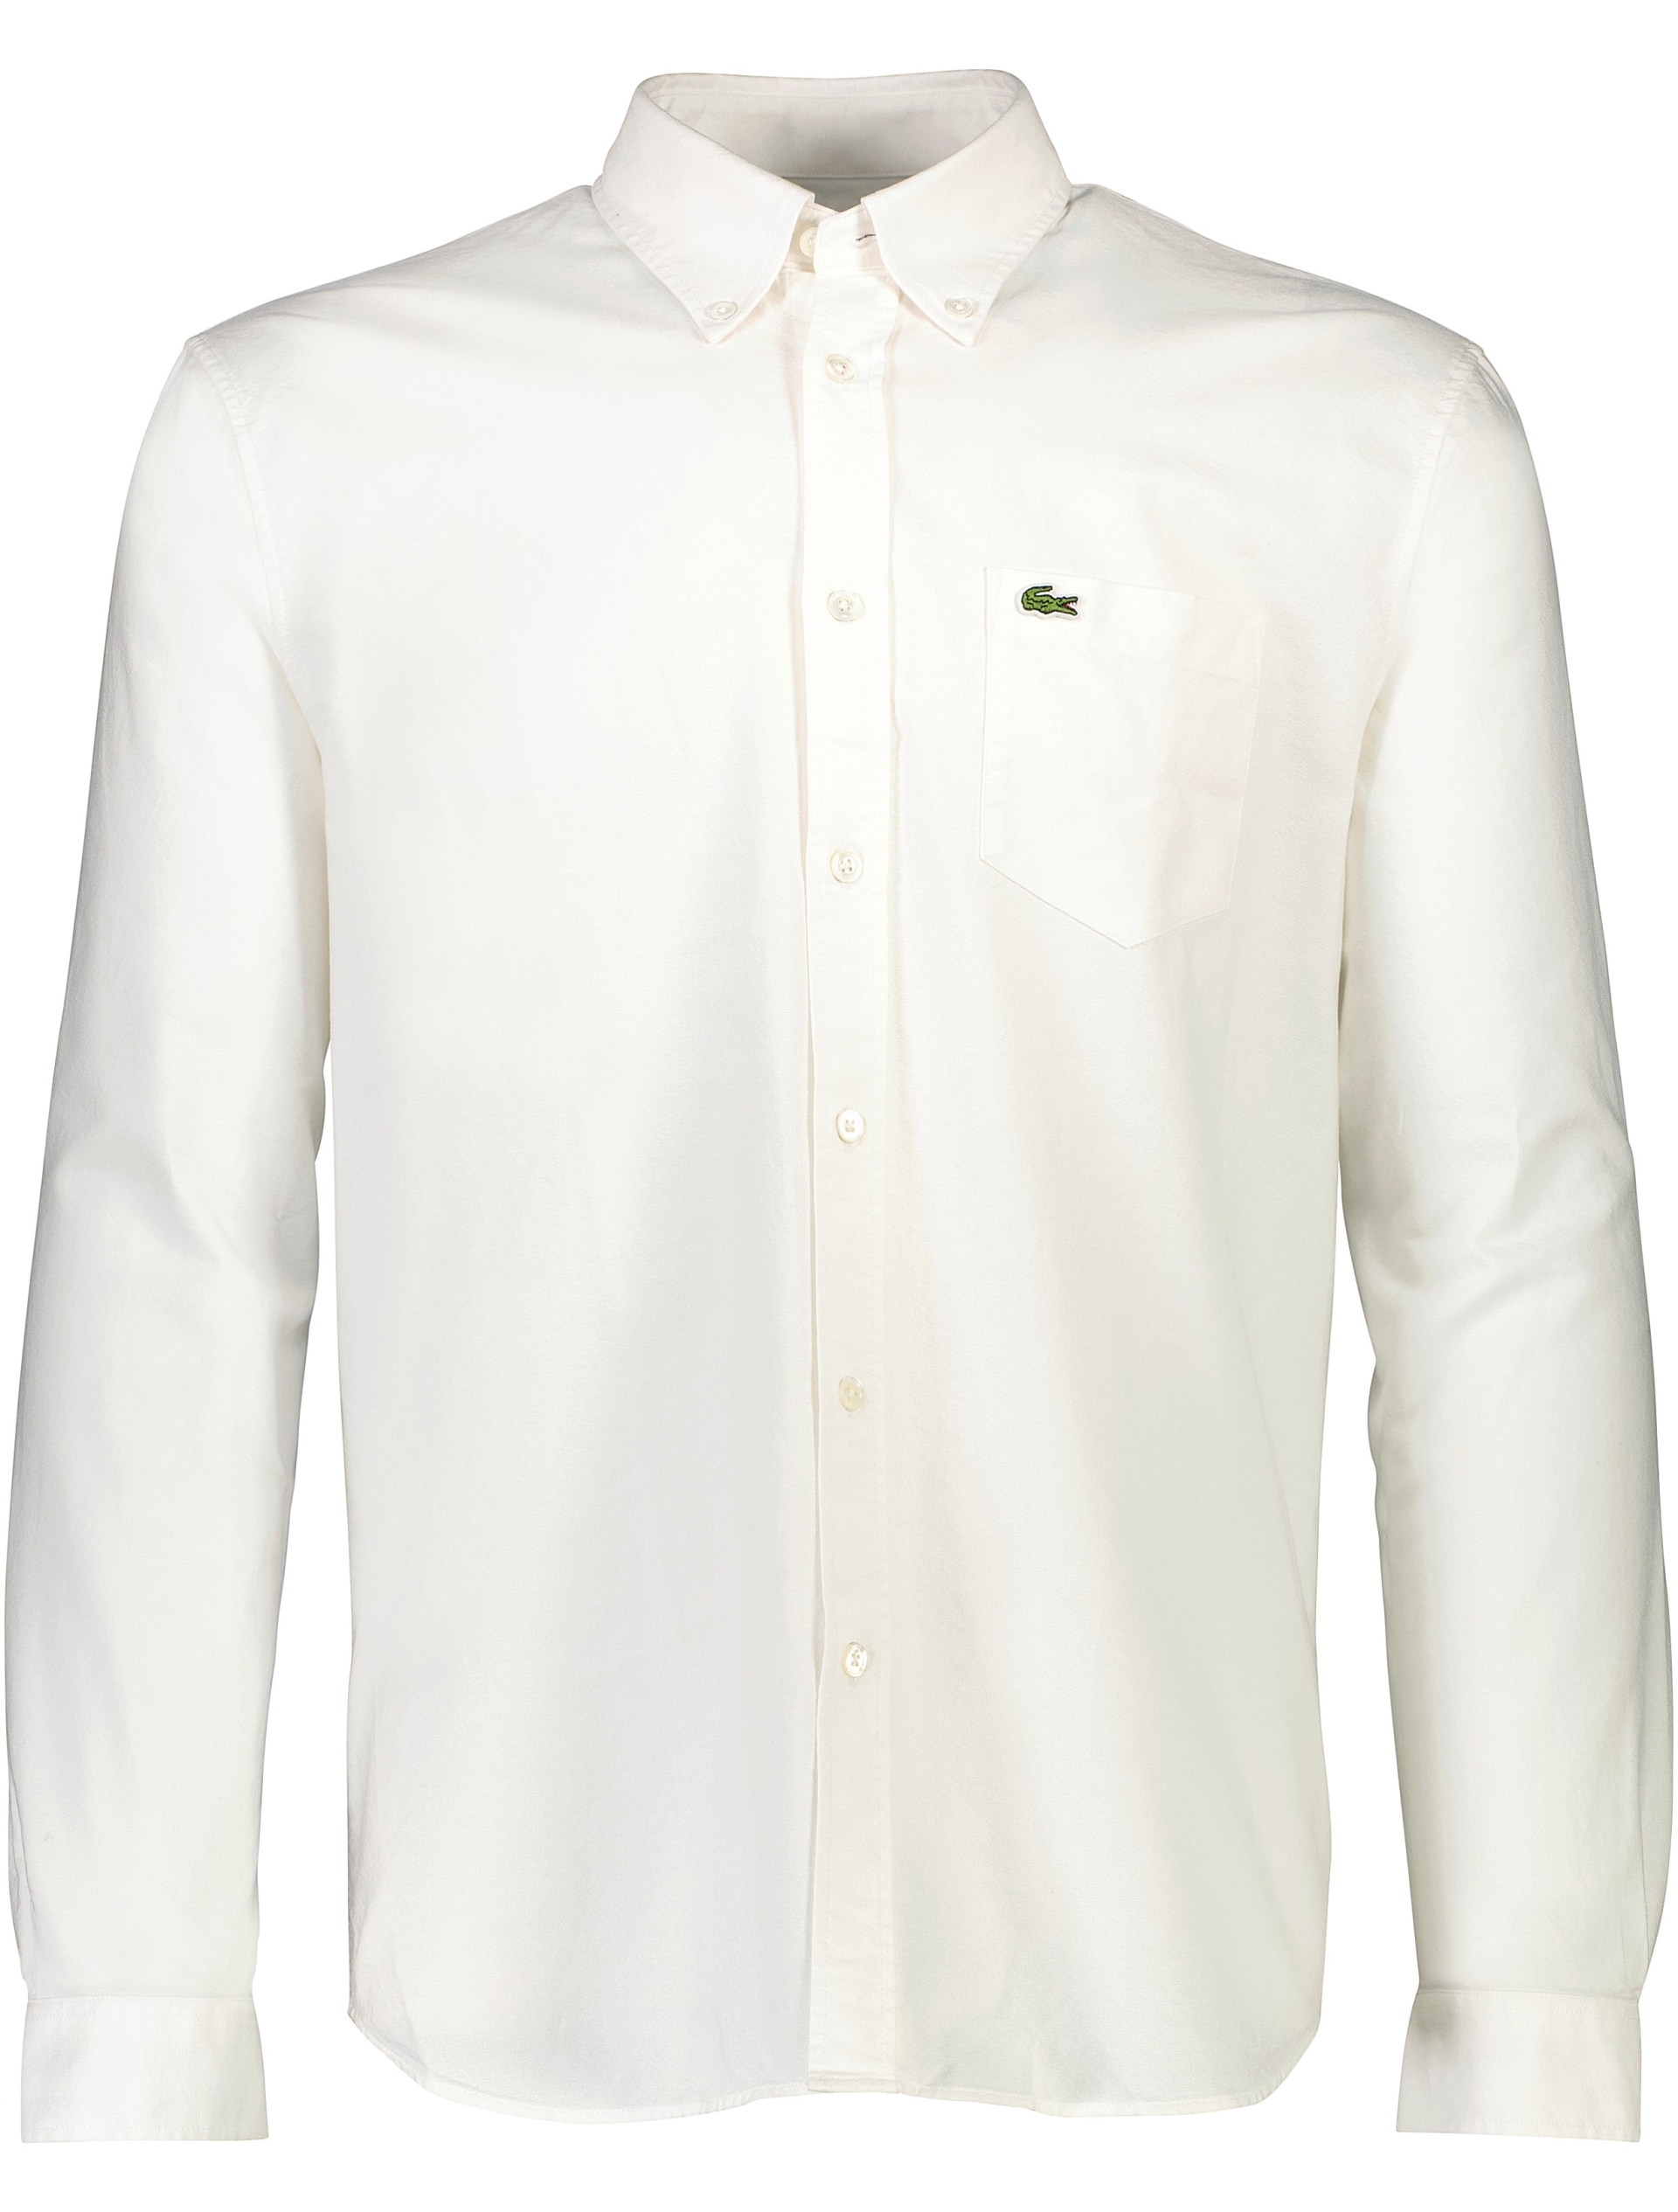 Lacoste Oxford skjorte hvid / 001 white